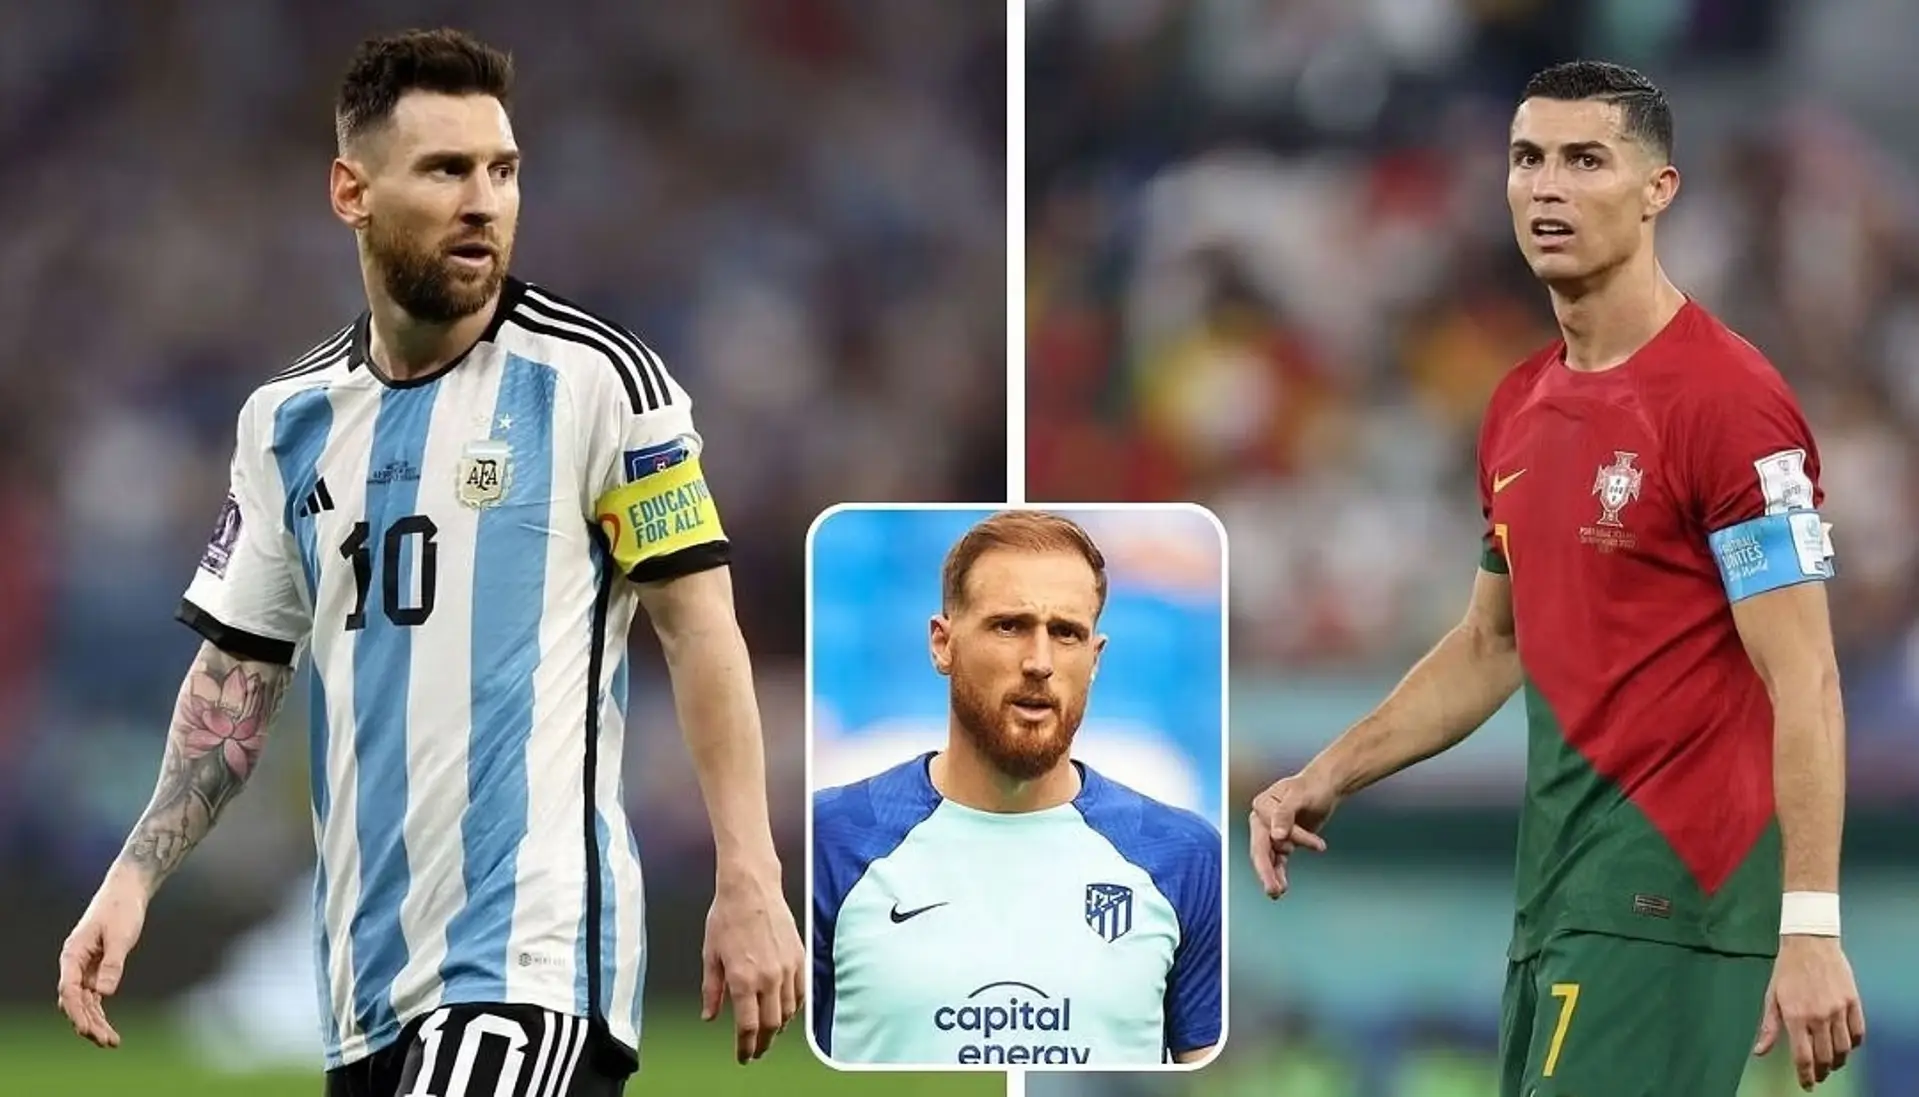 "Für mich ist er der Beste": Jan Oblak wählt zwischen Messi und Ronaldo 